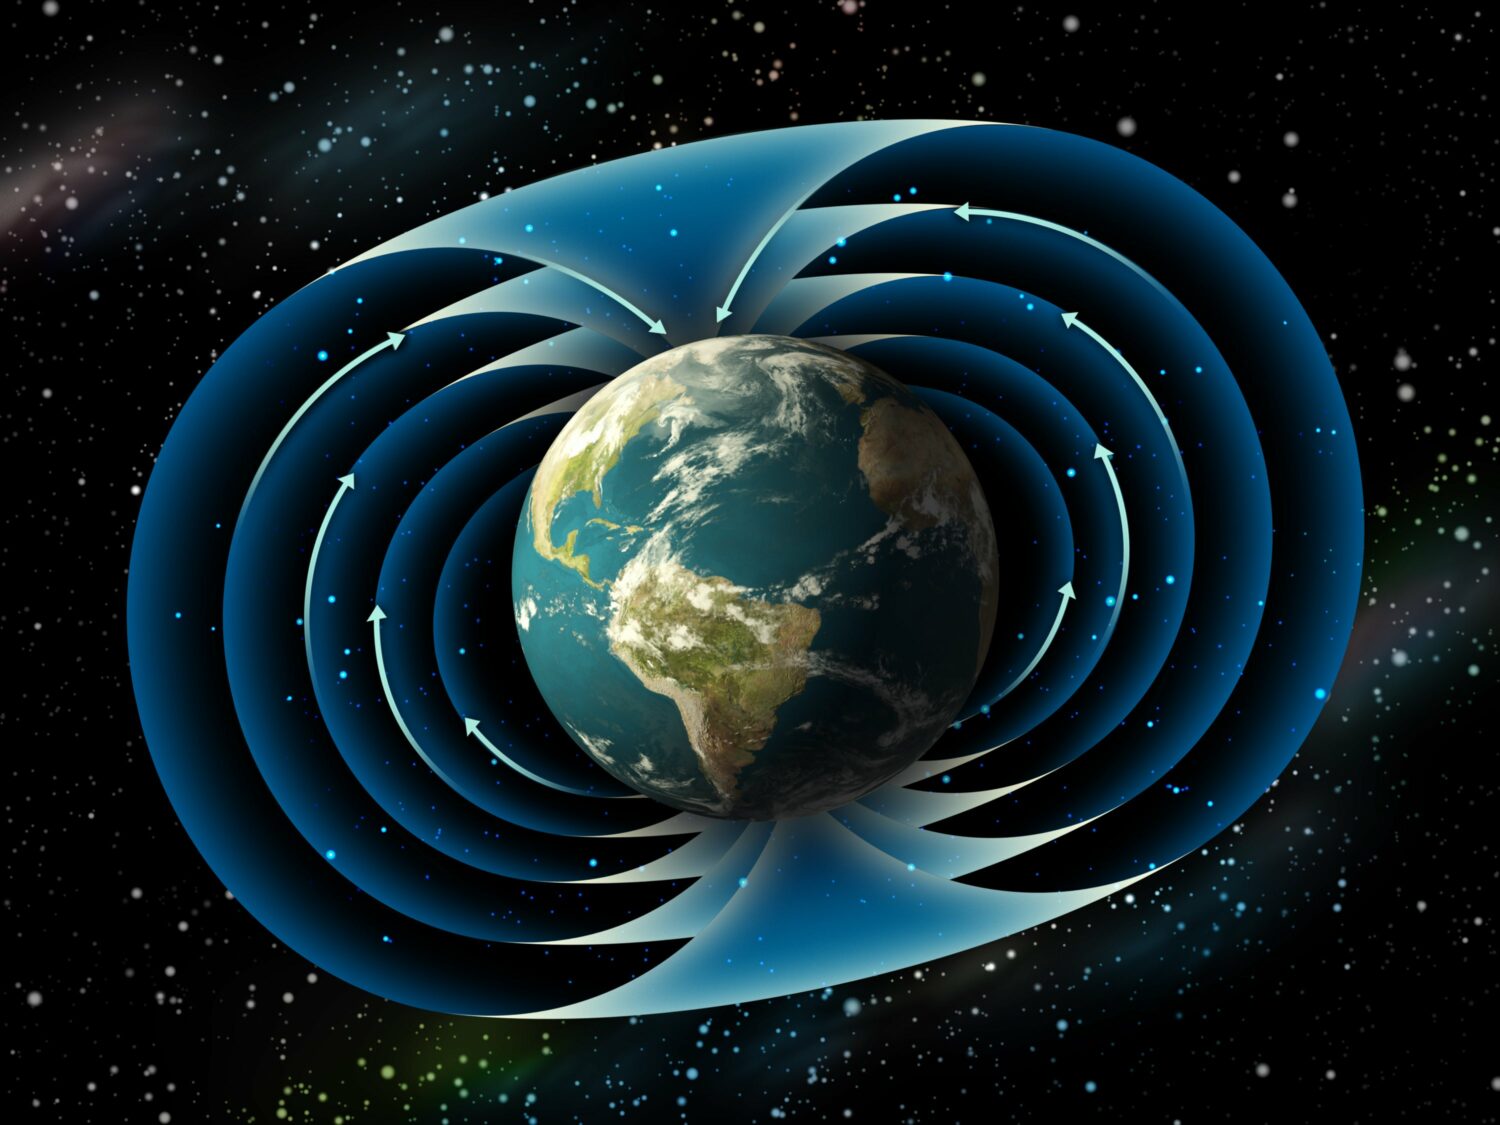 Πλάκες της Μεσοποταμίας μαρτυρούν αλλαγή στο μαγνητικό πεδίο της Γης (φώτο)